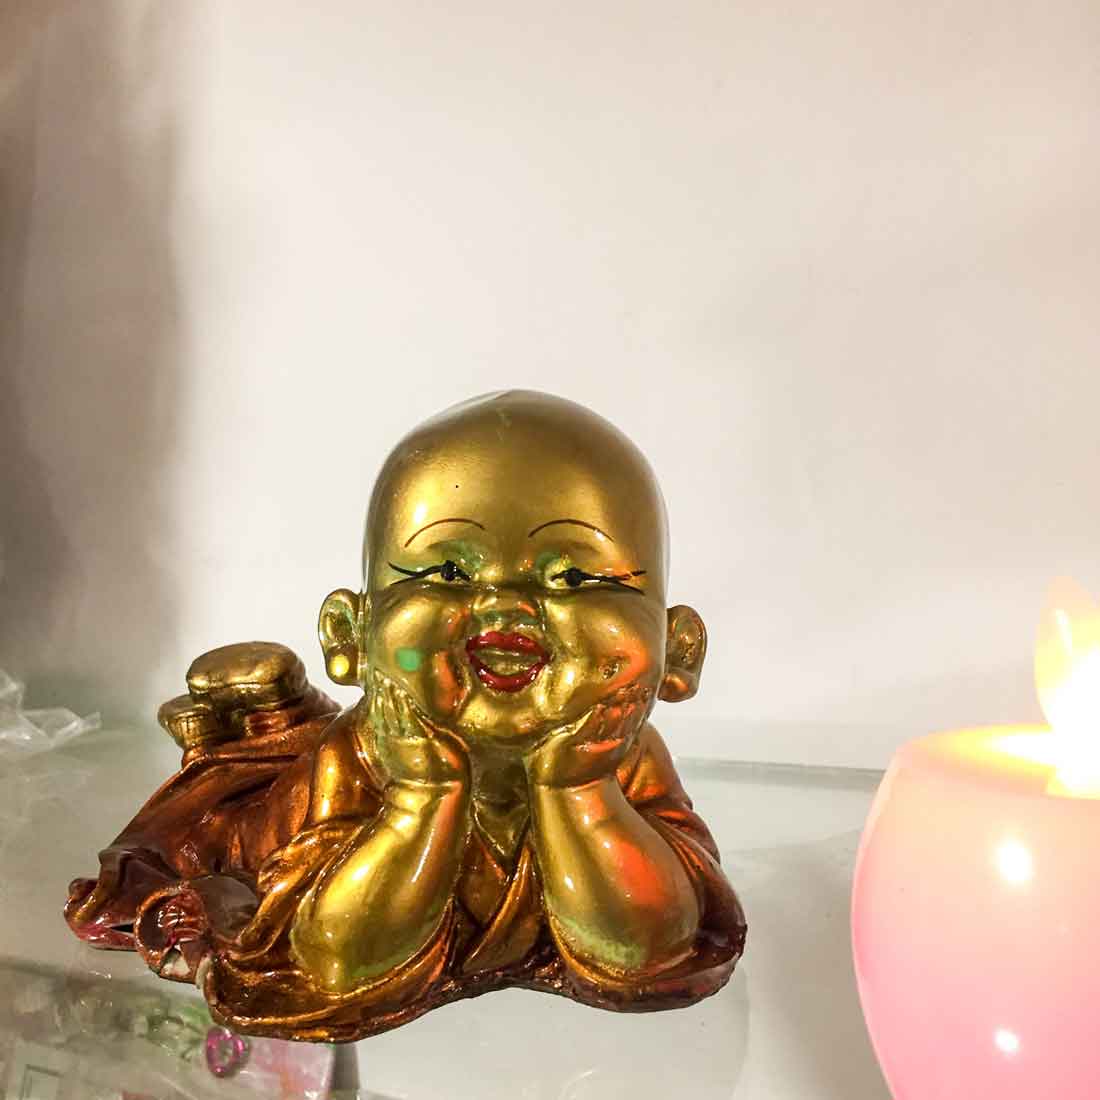 Baby Monk Showpiece - for Home  & Garden Decor - 6 Inch - ApkaMart